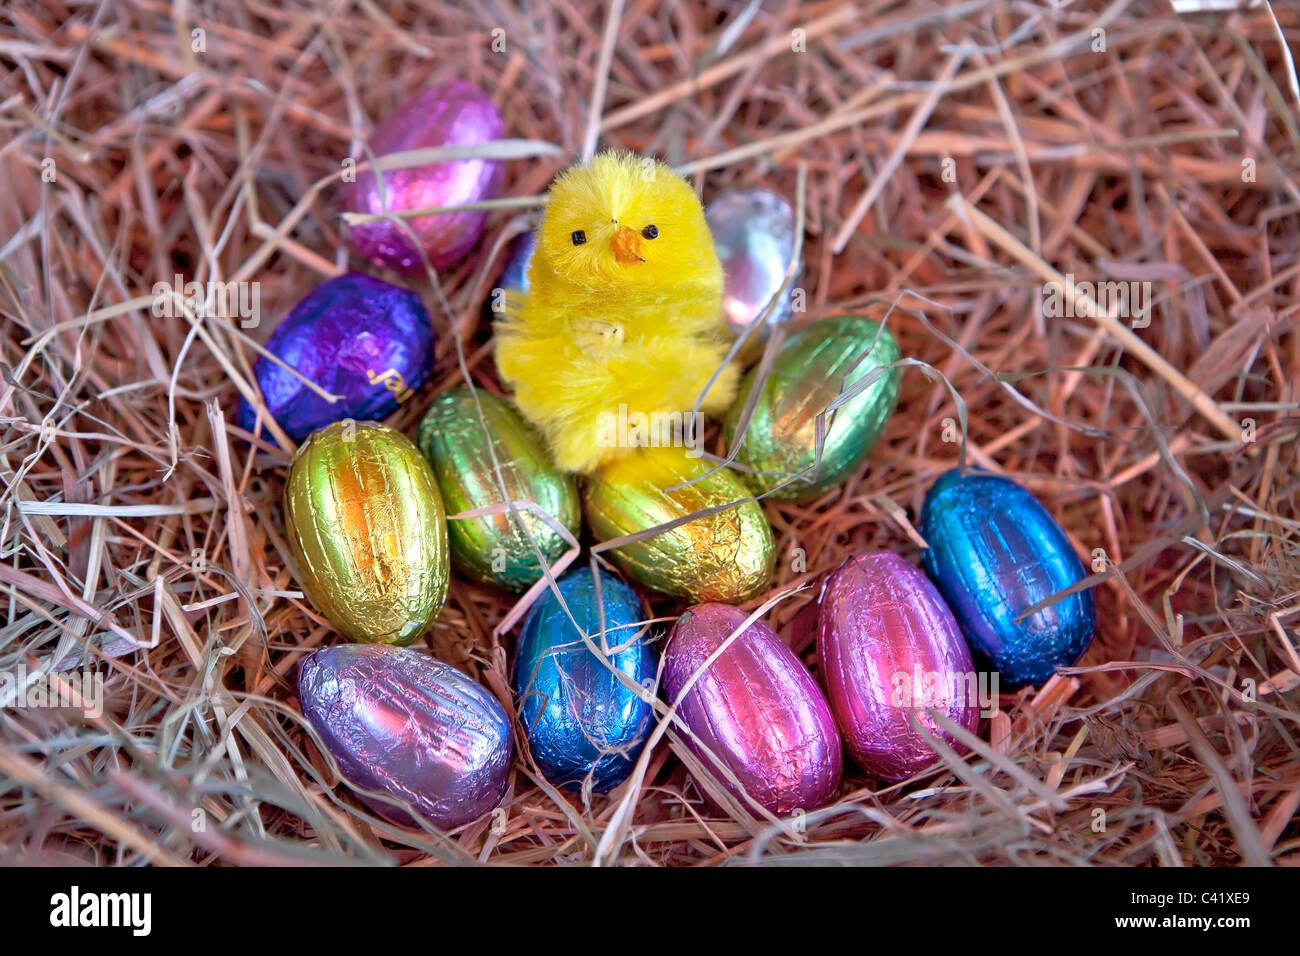 Uovo di Pasqua con un pulcino in un nido di paglia Foto Stock